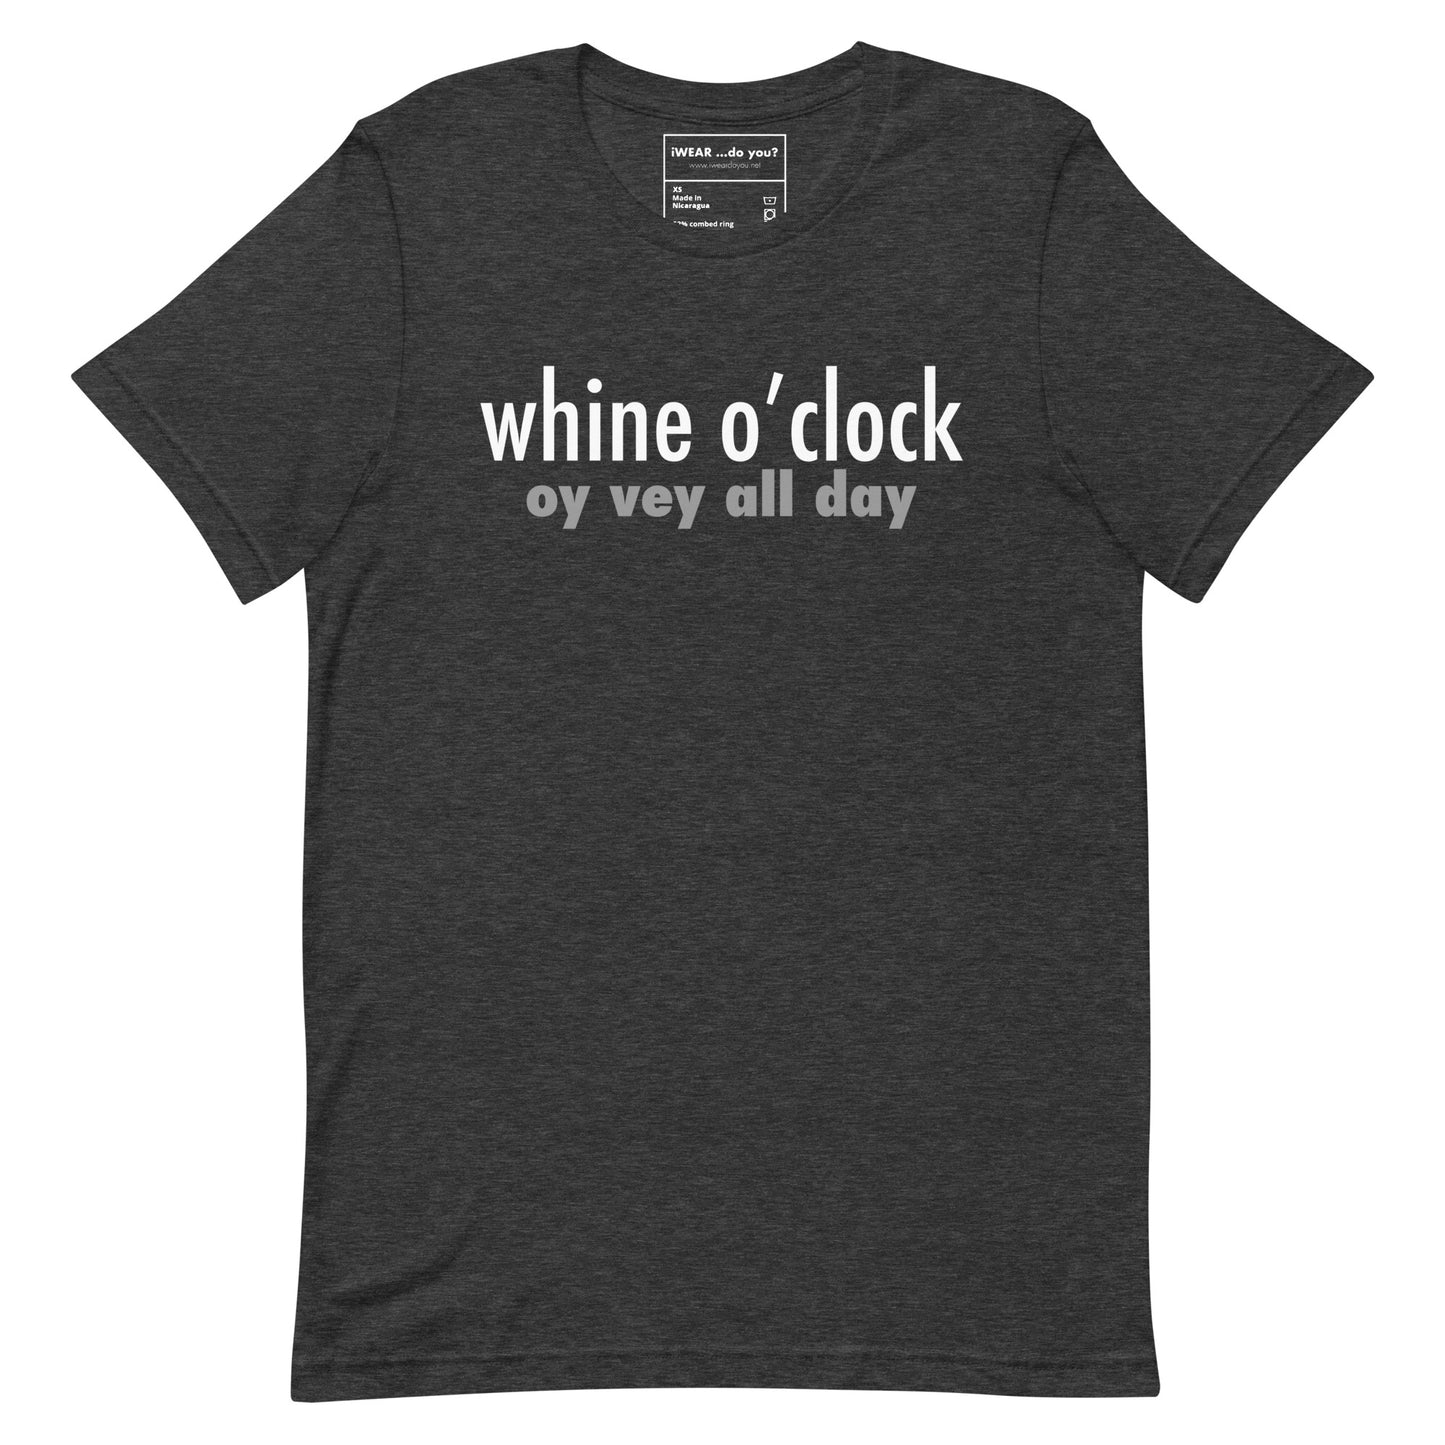 Whine o’clock tee